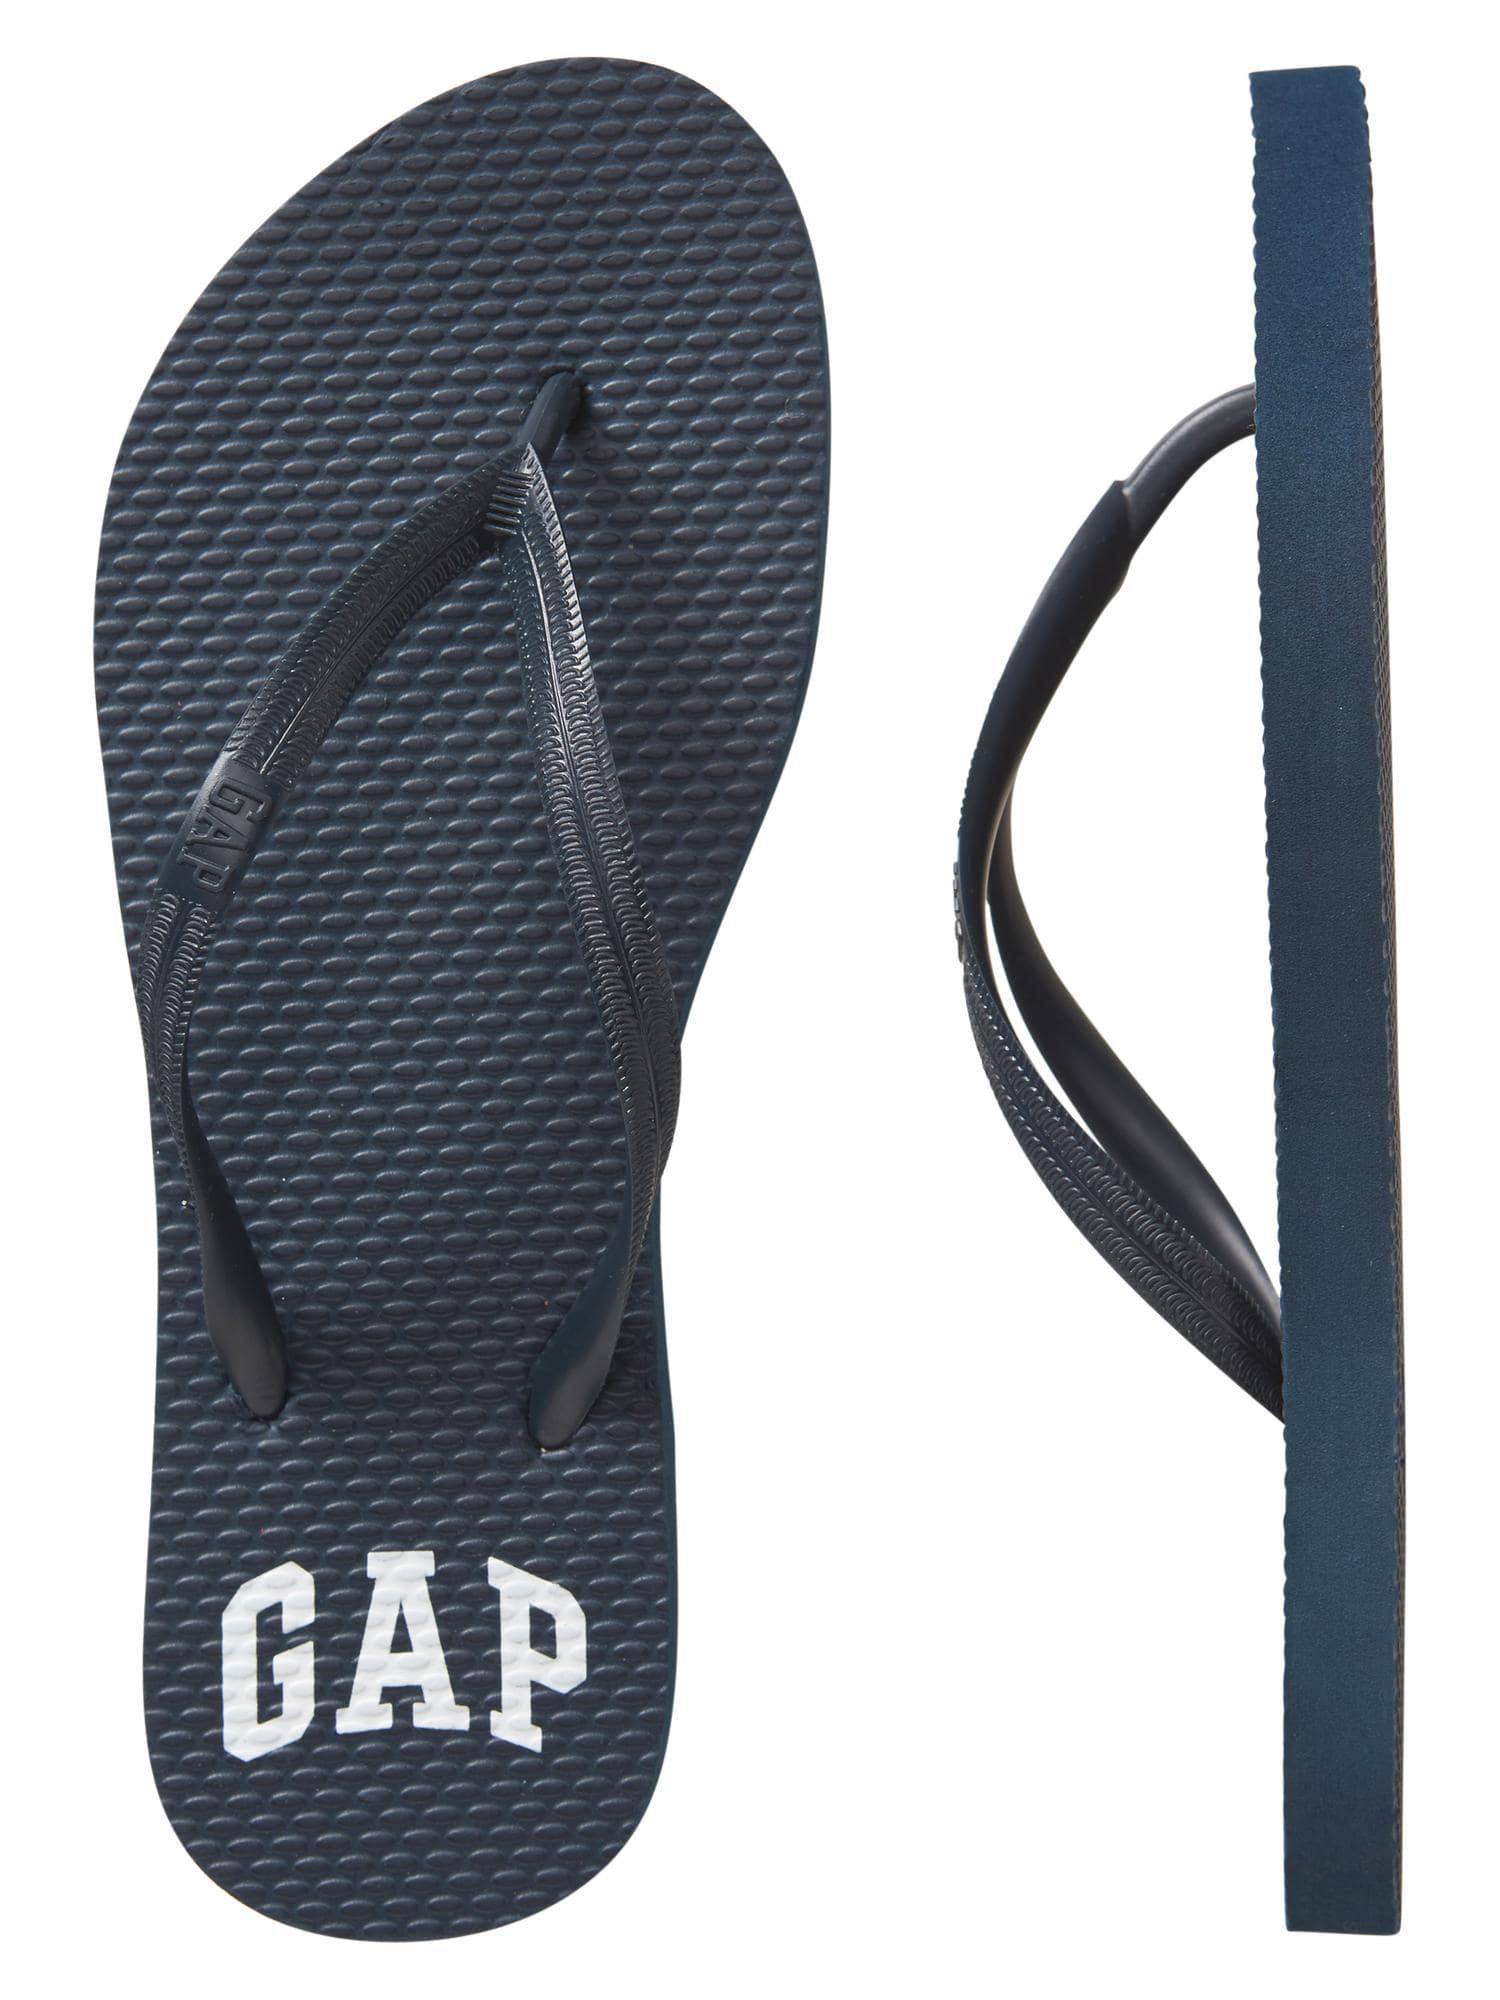 Gap Factory Logo - Lyst - Gap Factory Logo Flip Flops in Blue